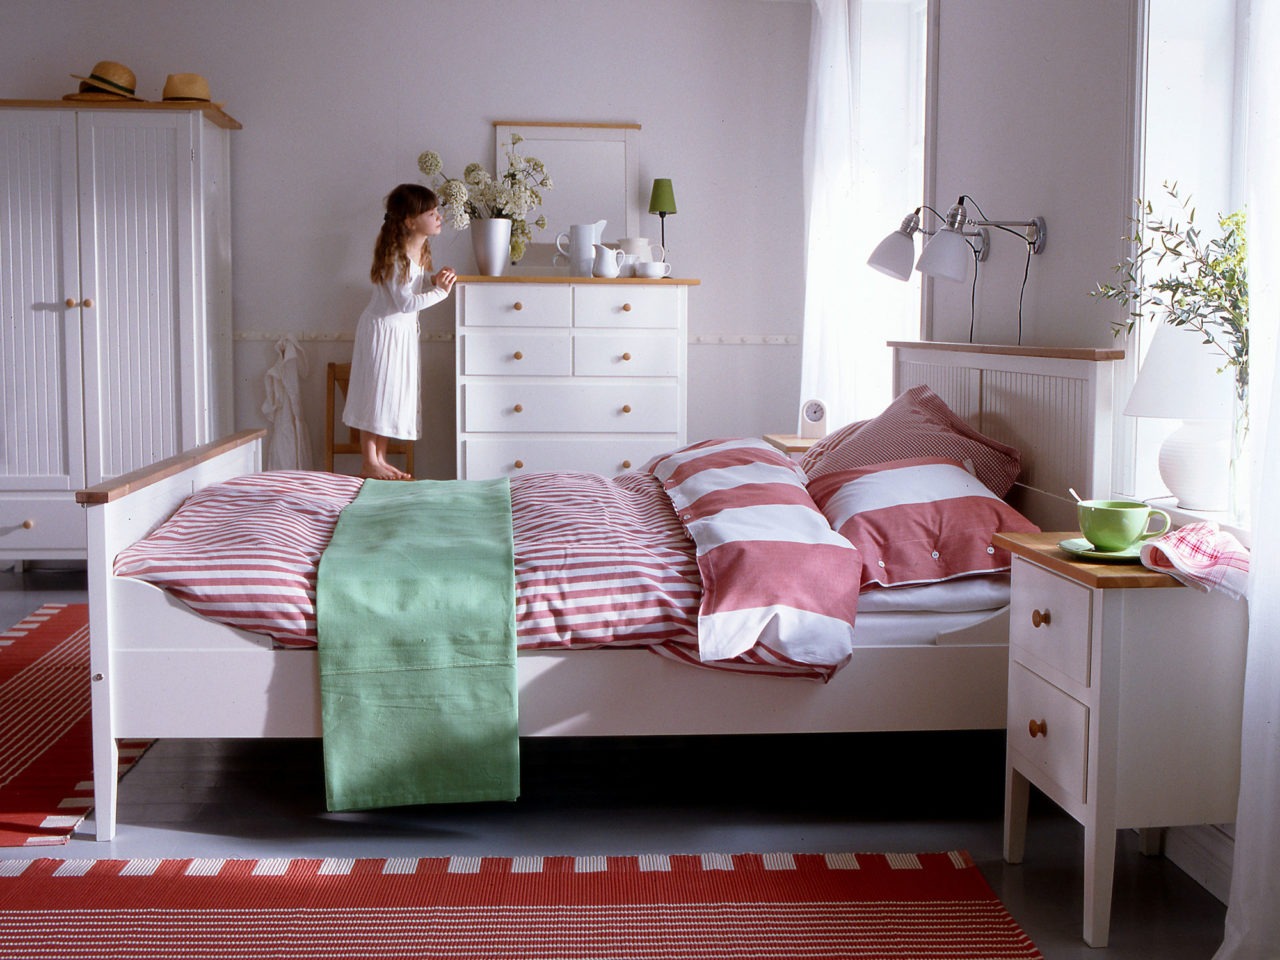 En flicka står på en stol och kikar ut från ett sovrum med möbler helt i vitt, modell VISDALEN, i modern allmogestil.